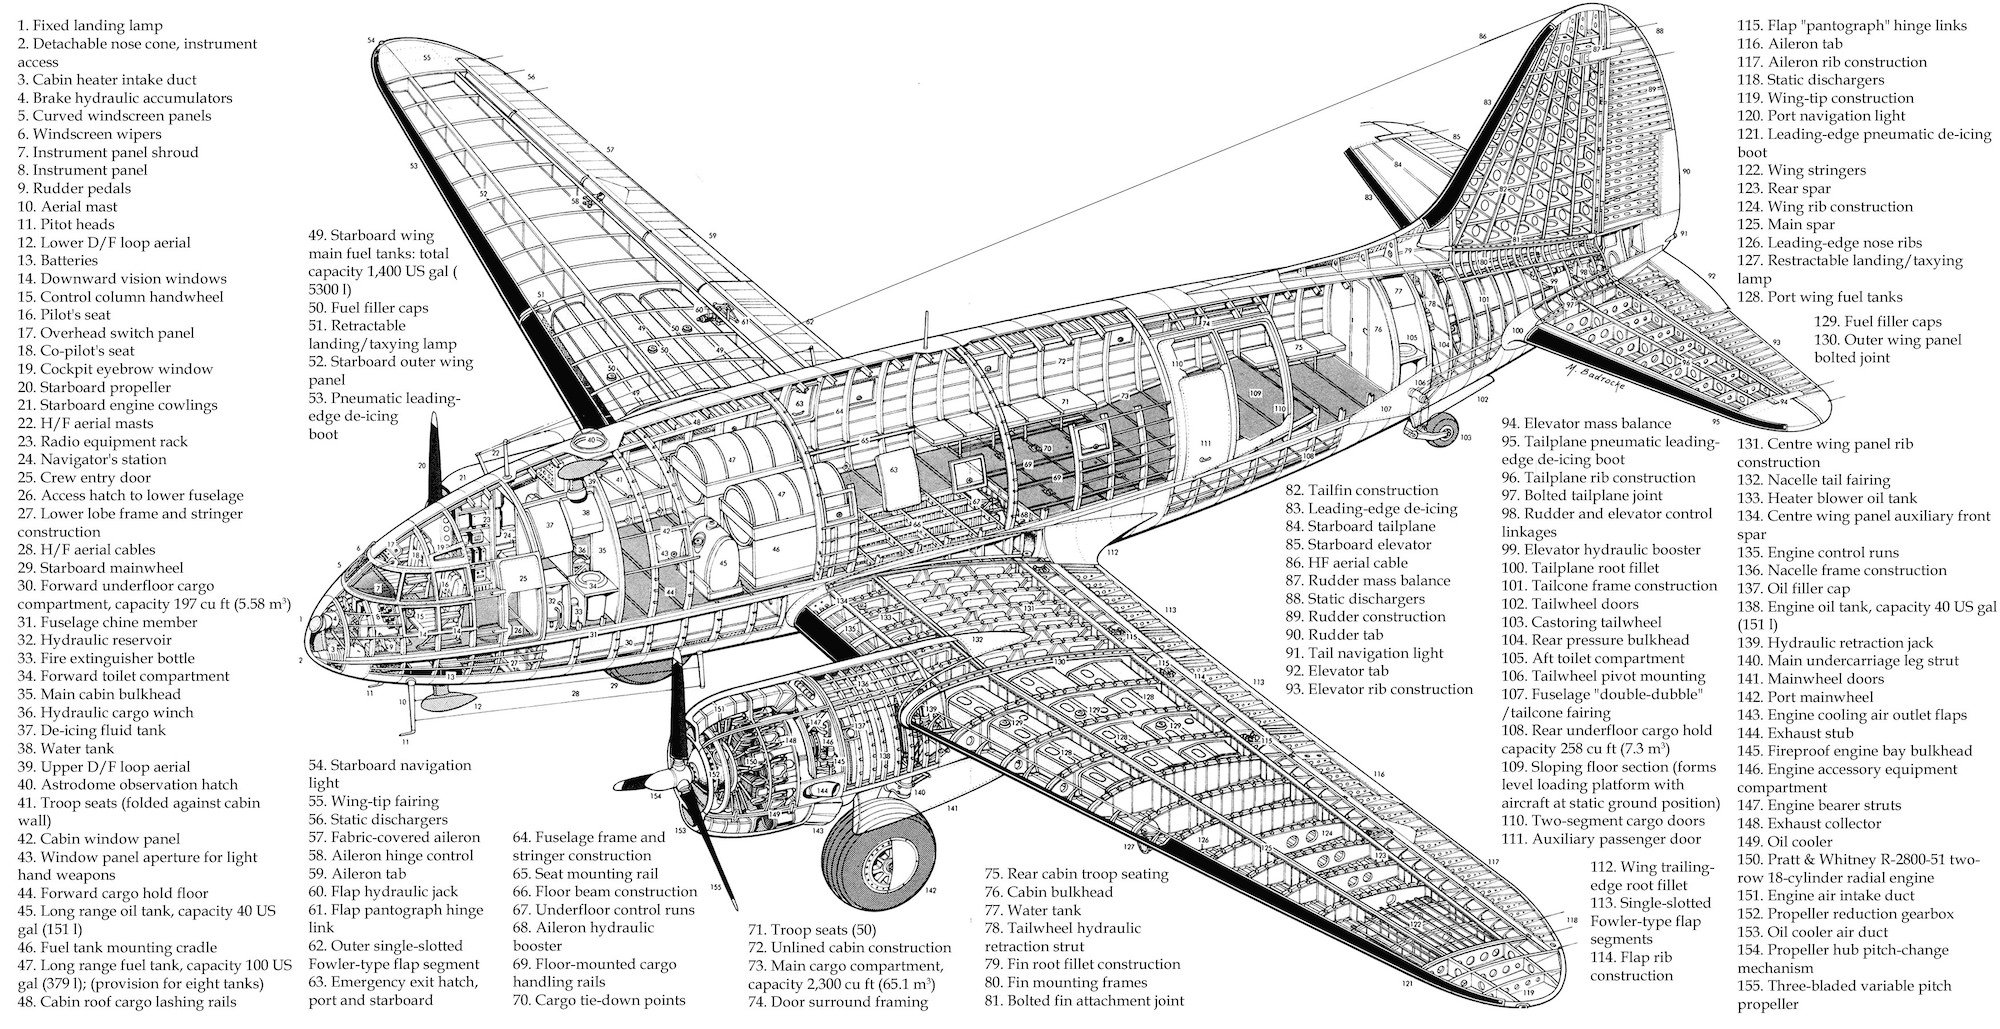 AirWingMedia.com » Curtiss C-46 Commando PDF eBook + Flight Manuals